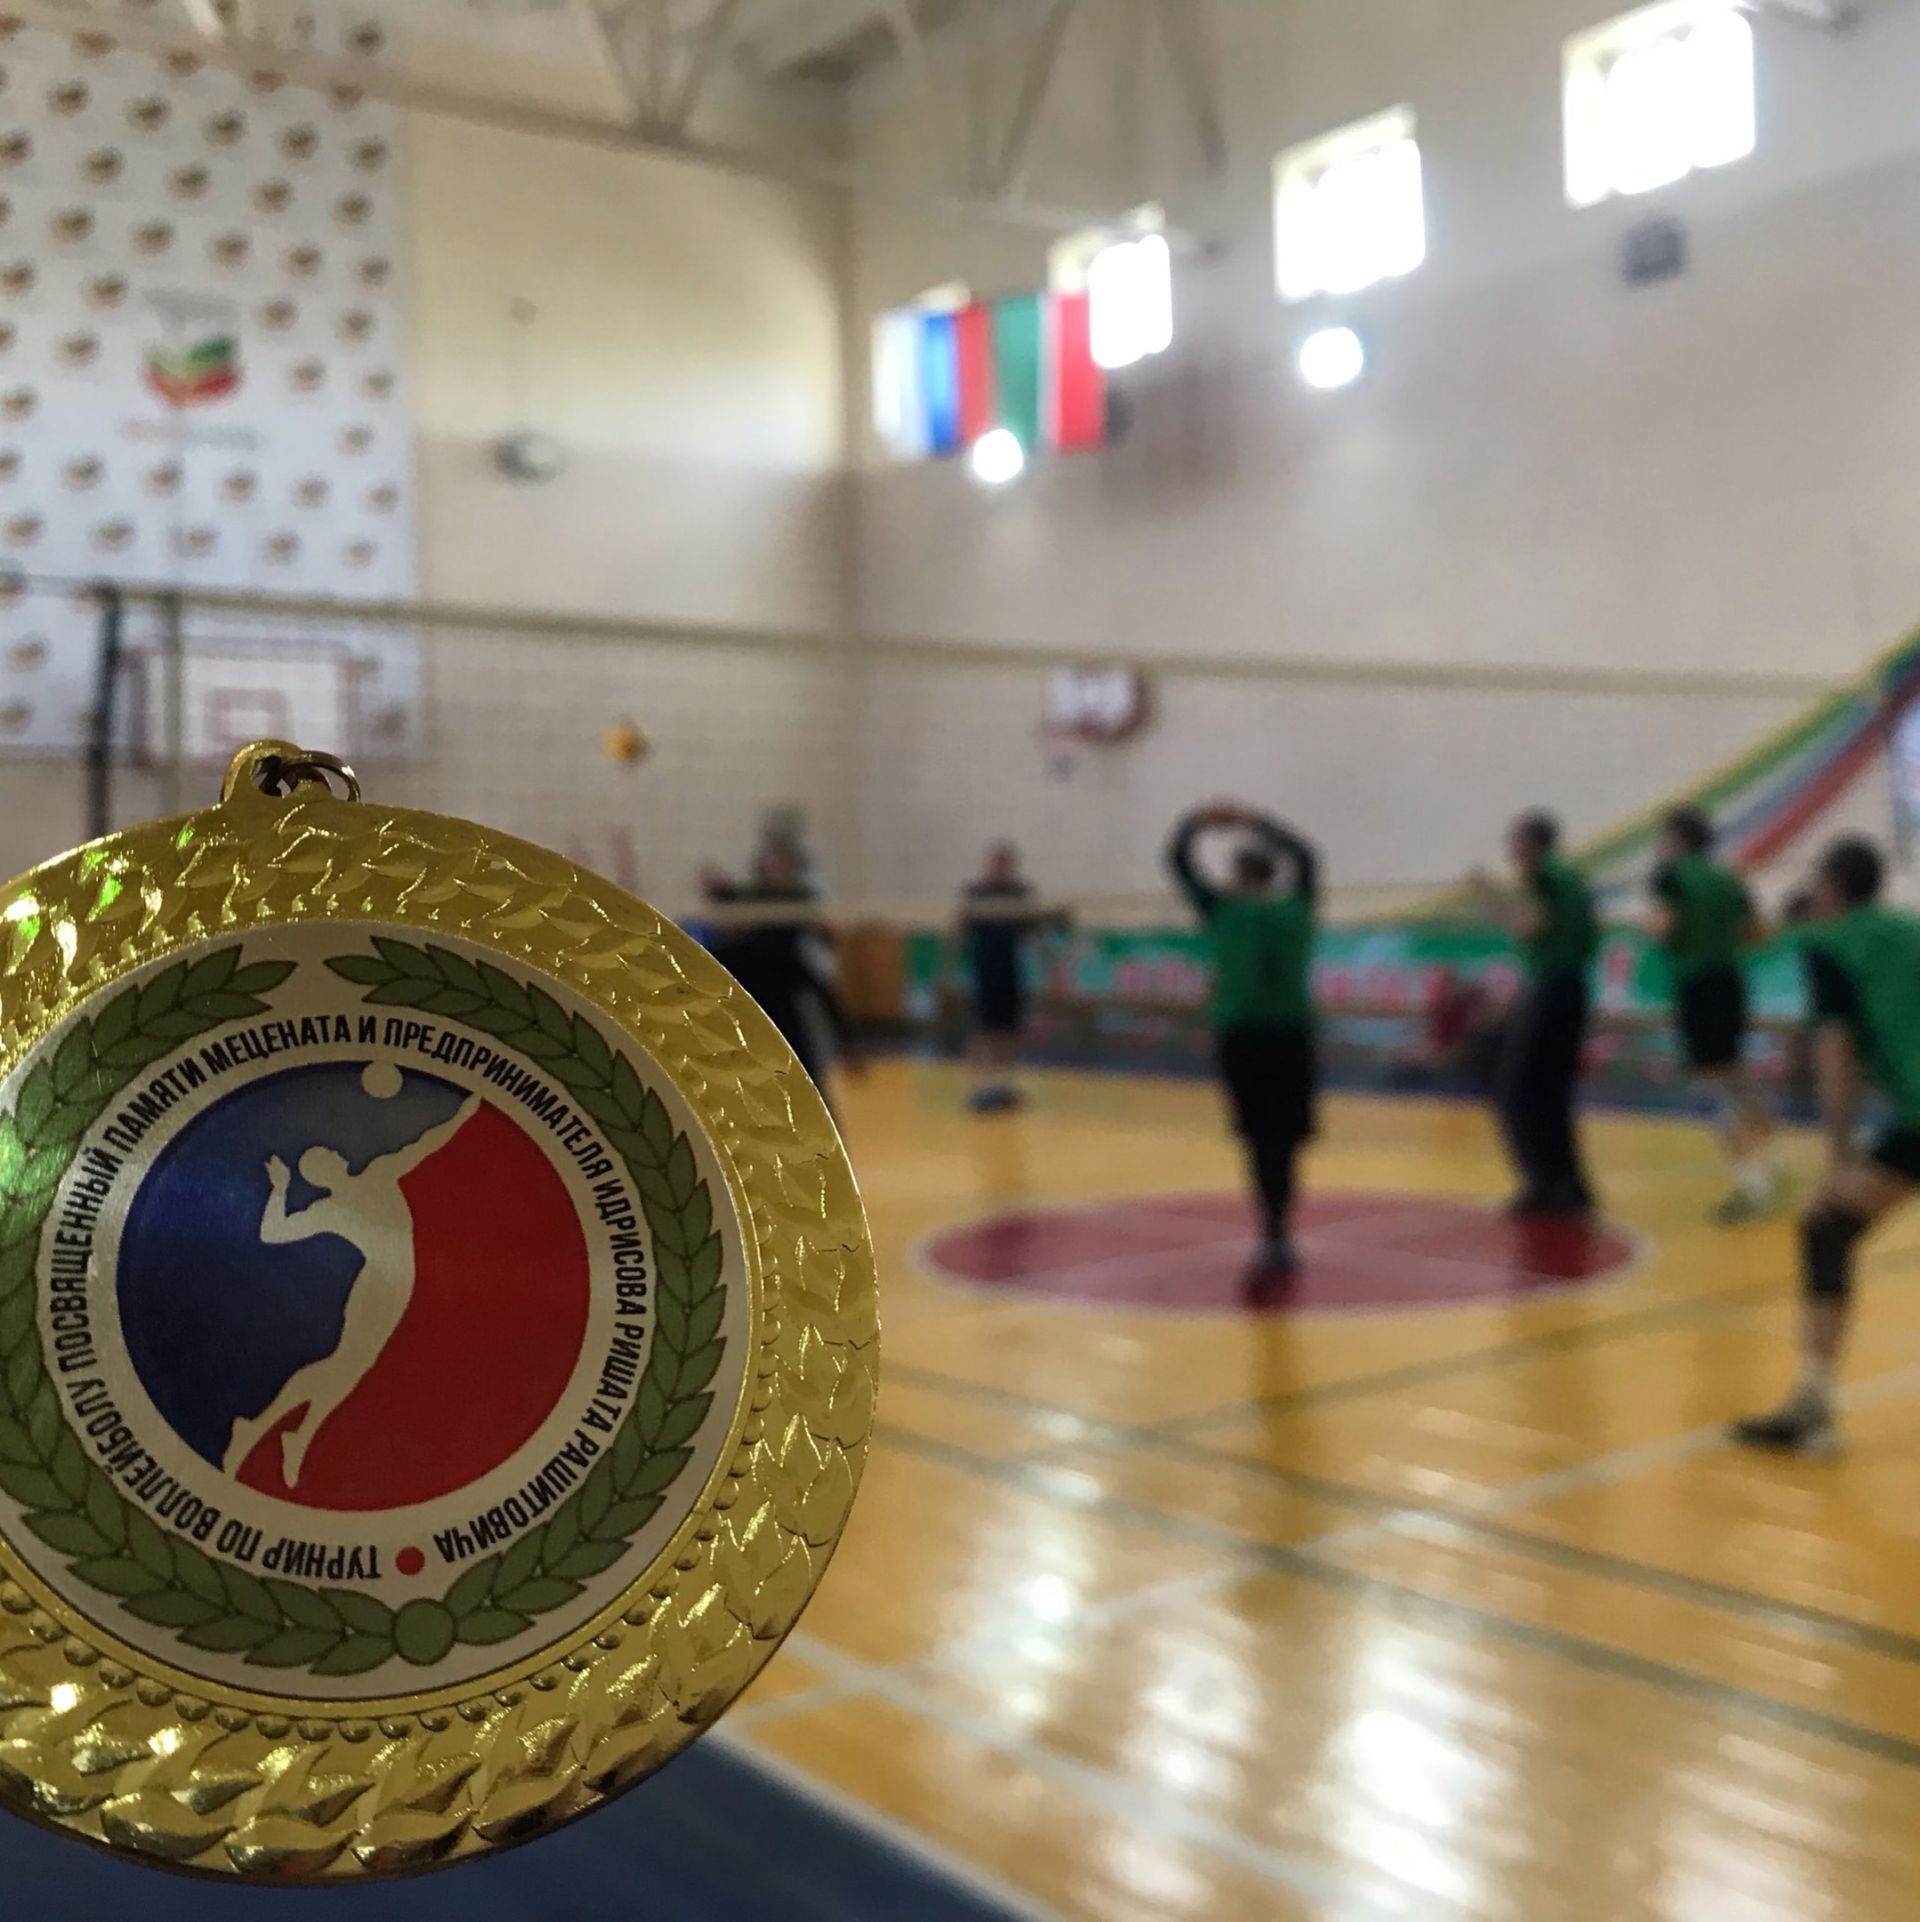 Благотворительный турнир по волейболу состоялся в Бугульминском районе